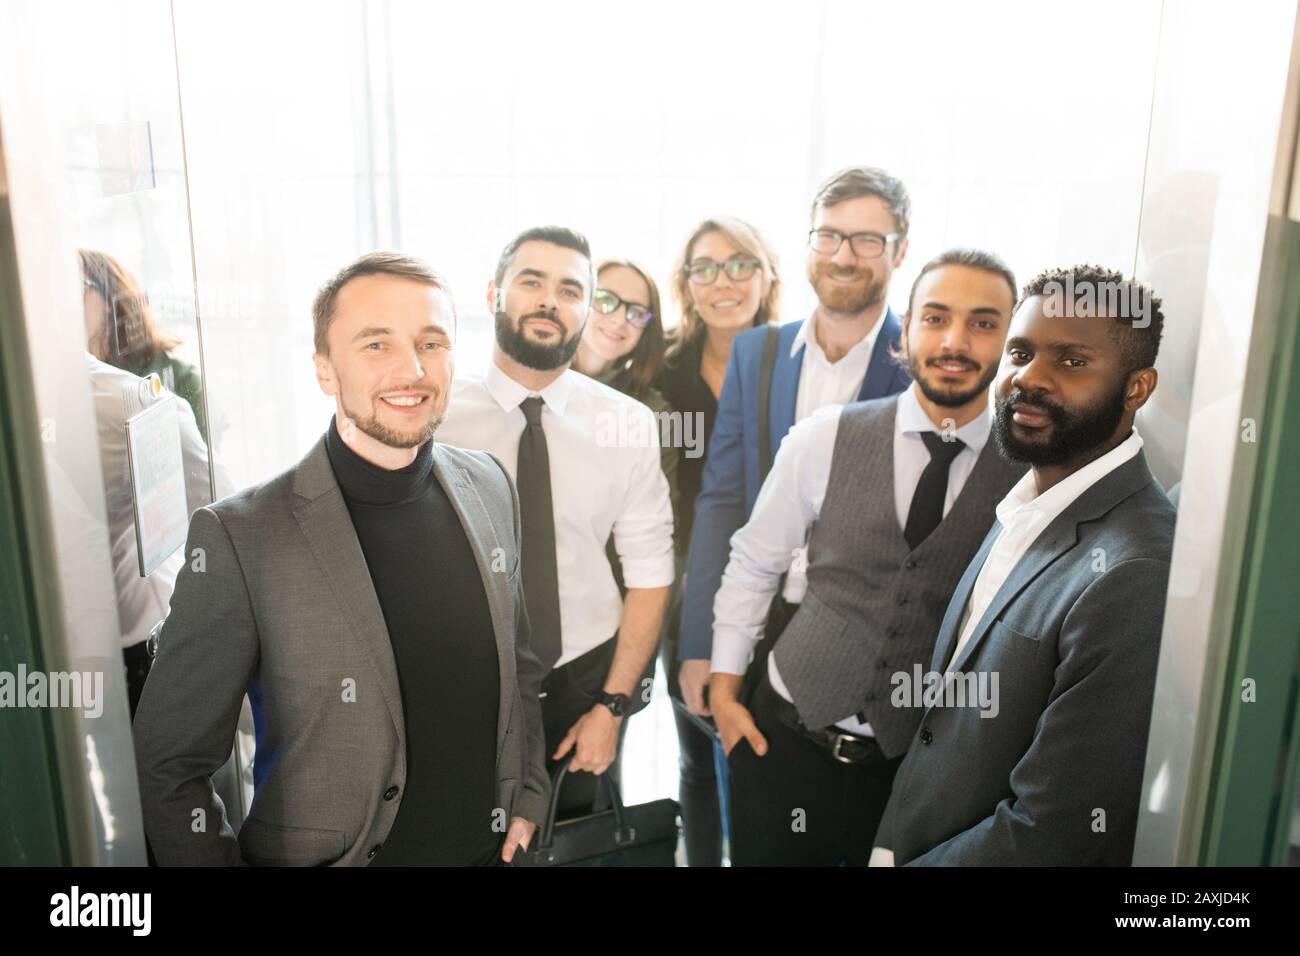 Groupe multi-ethnique de spécialistes d'affaires dans des tenues élégantes et formelles debout à l'entrée et regardant l'appareil photo Banque D'Images